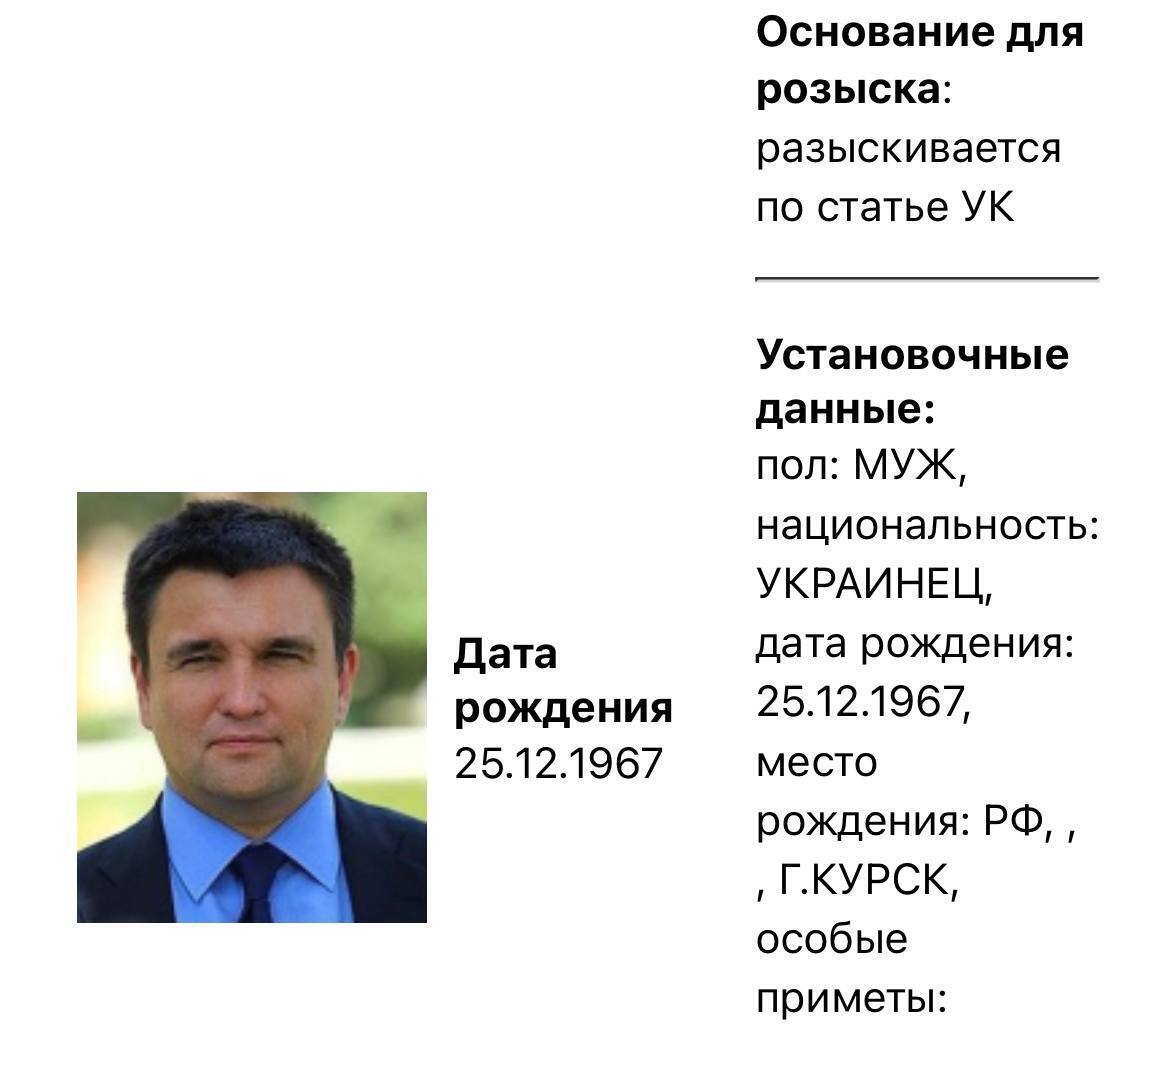 МВД рф подало в розыск ряд бывших украинских чиновников: кто в ''черном'' списке